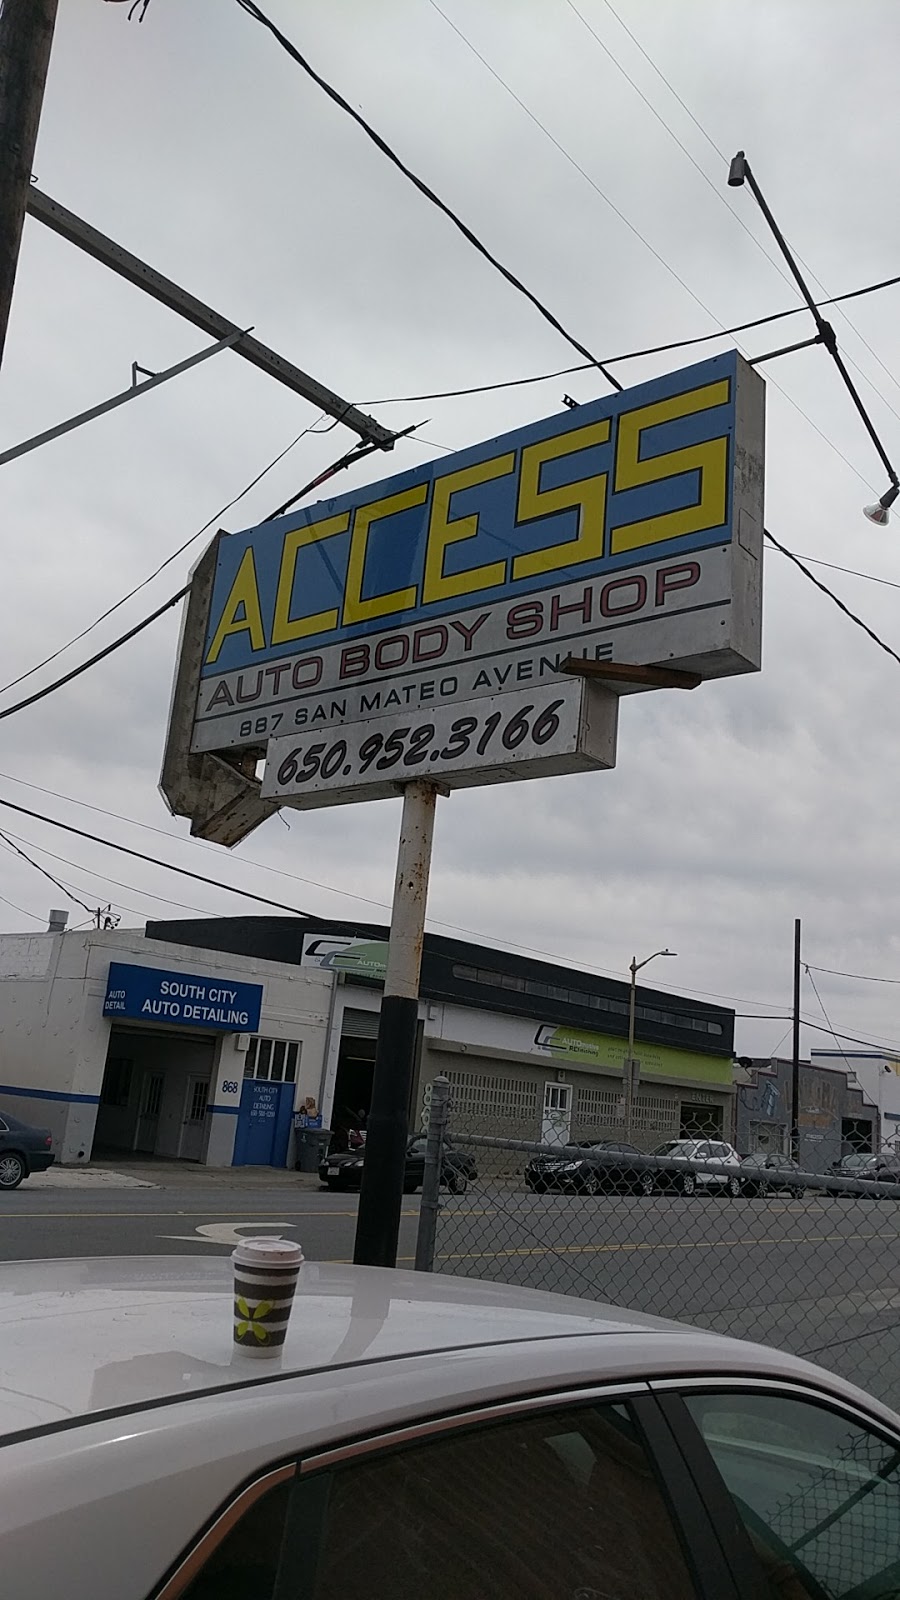 Access Auto Body Shop